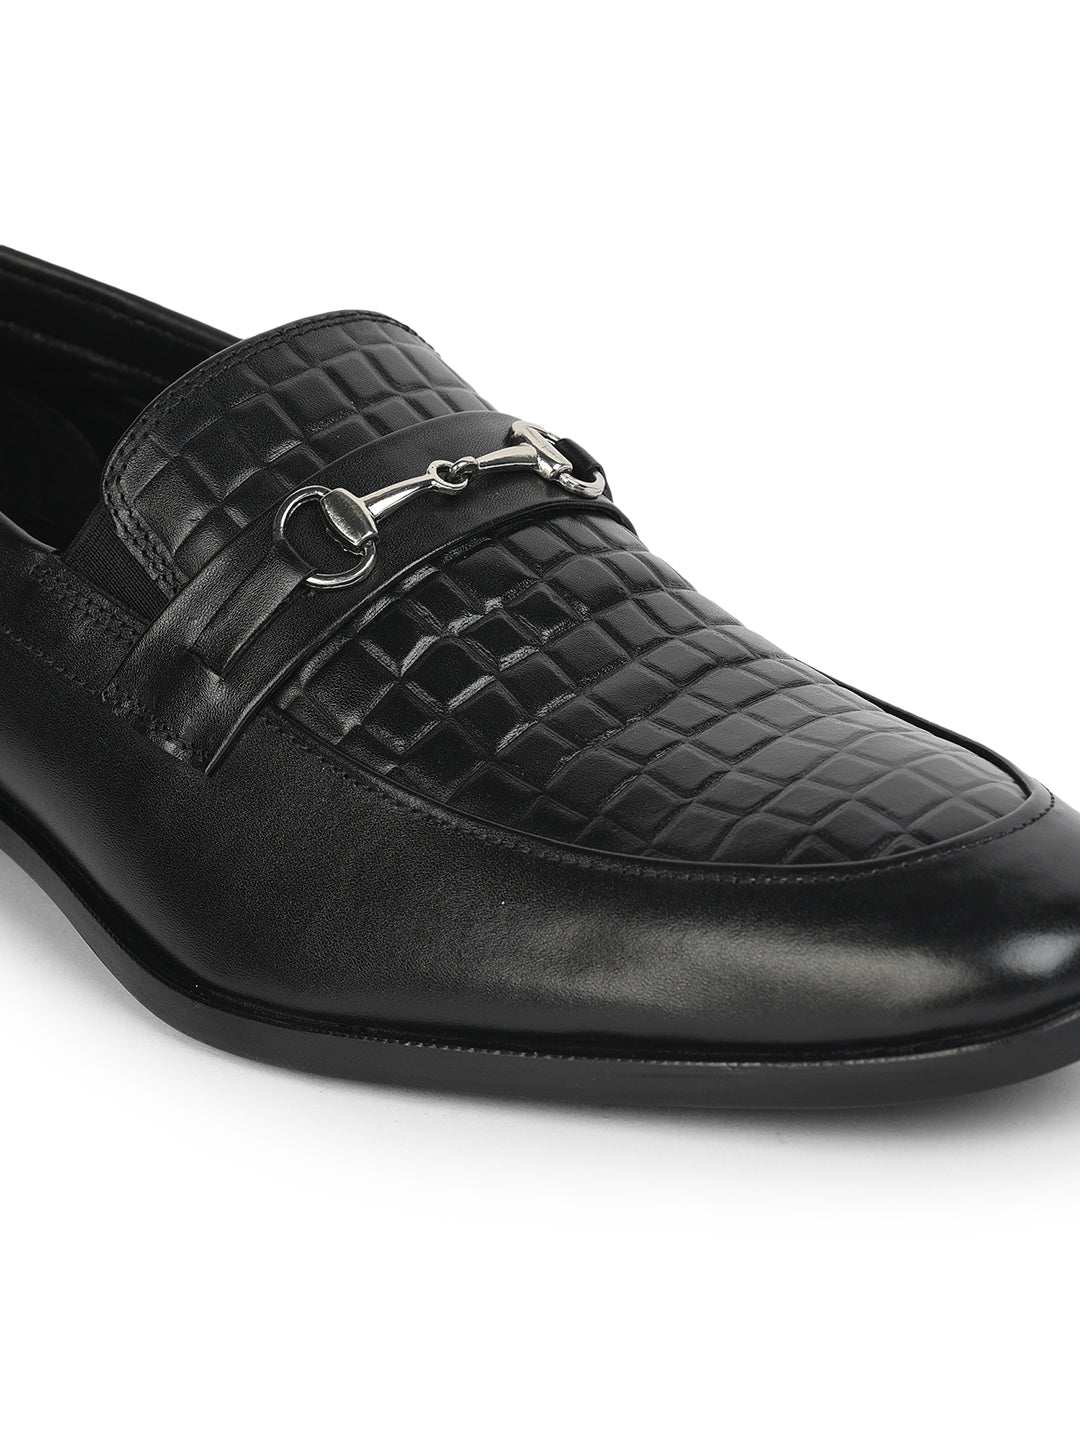 Footwear, Men Footwear, Black Loafers